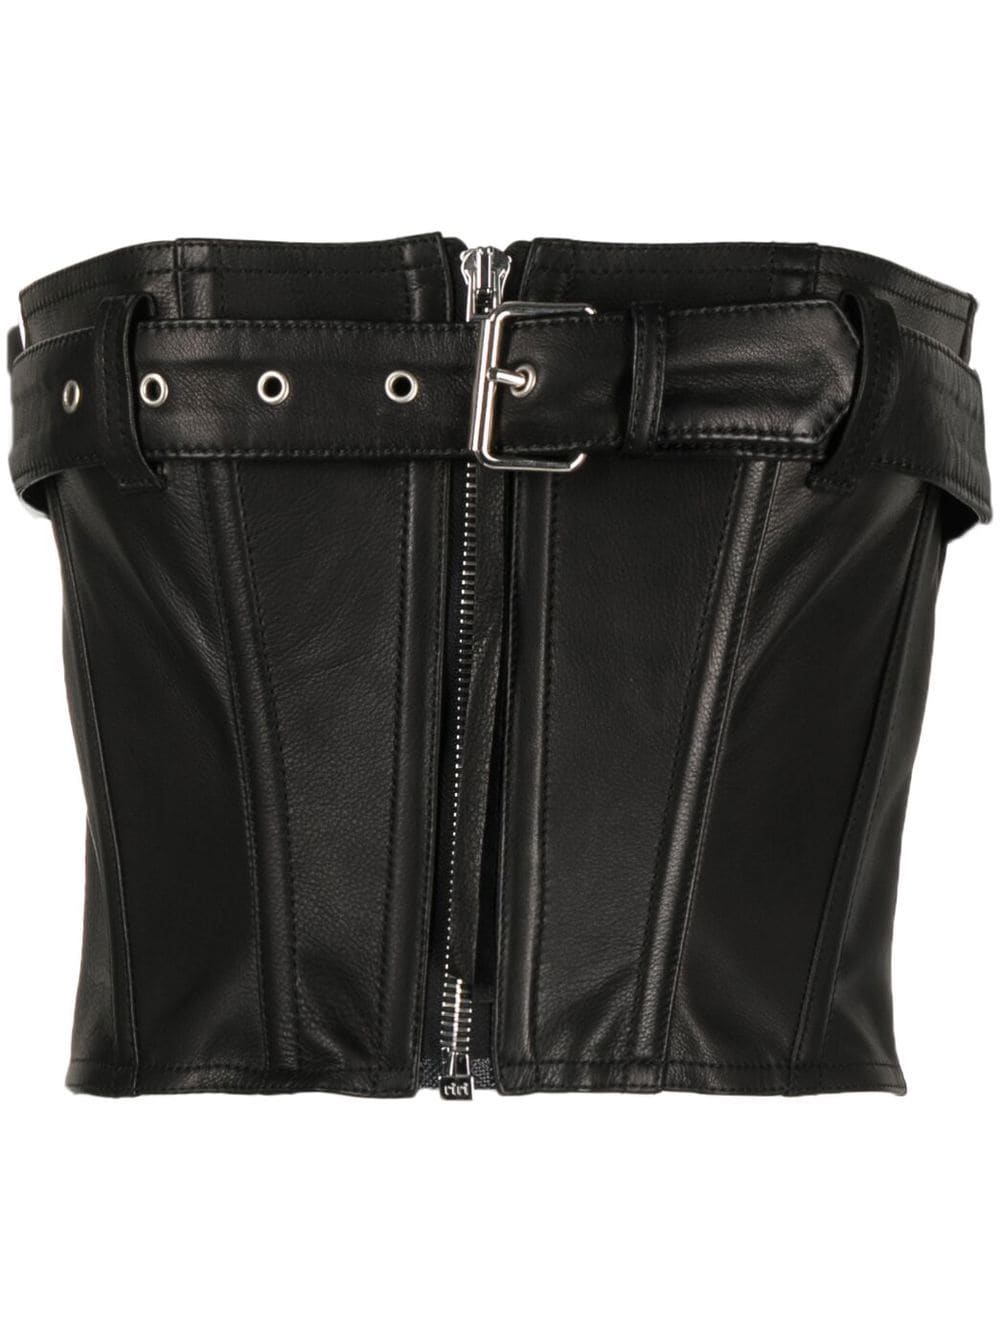 Faith Connexion leather belted corset top - Black von Faith Connexion